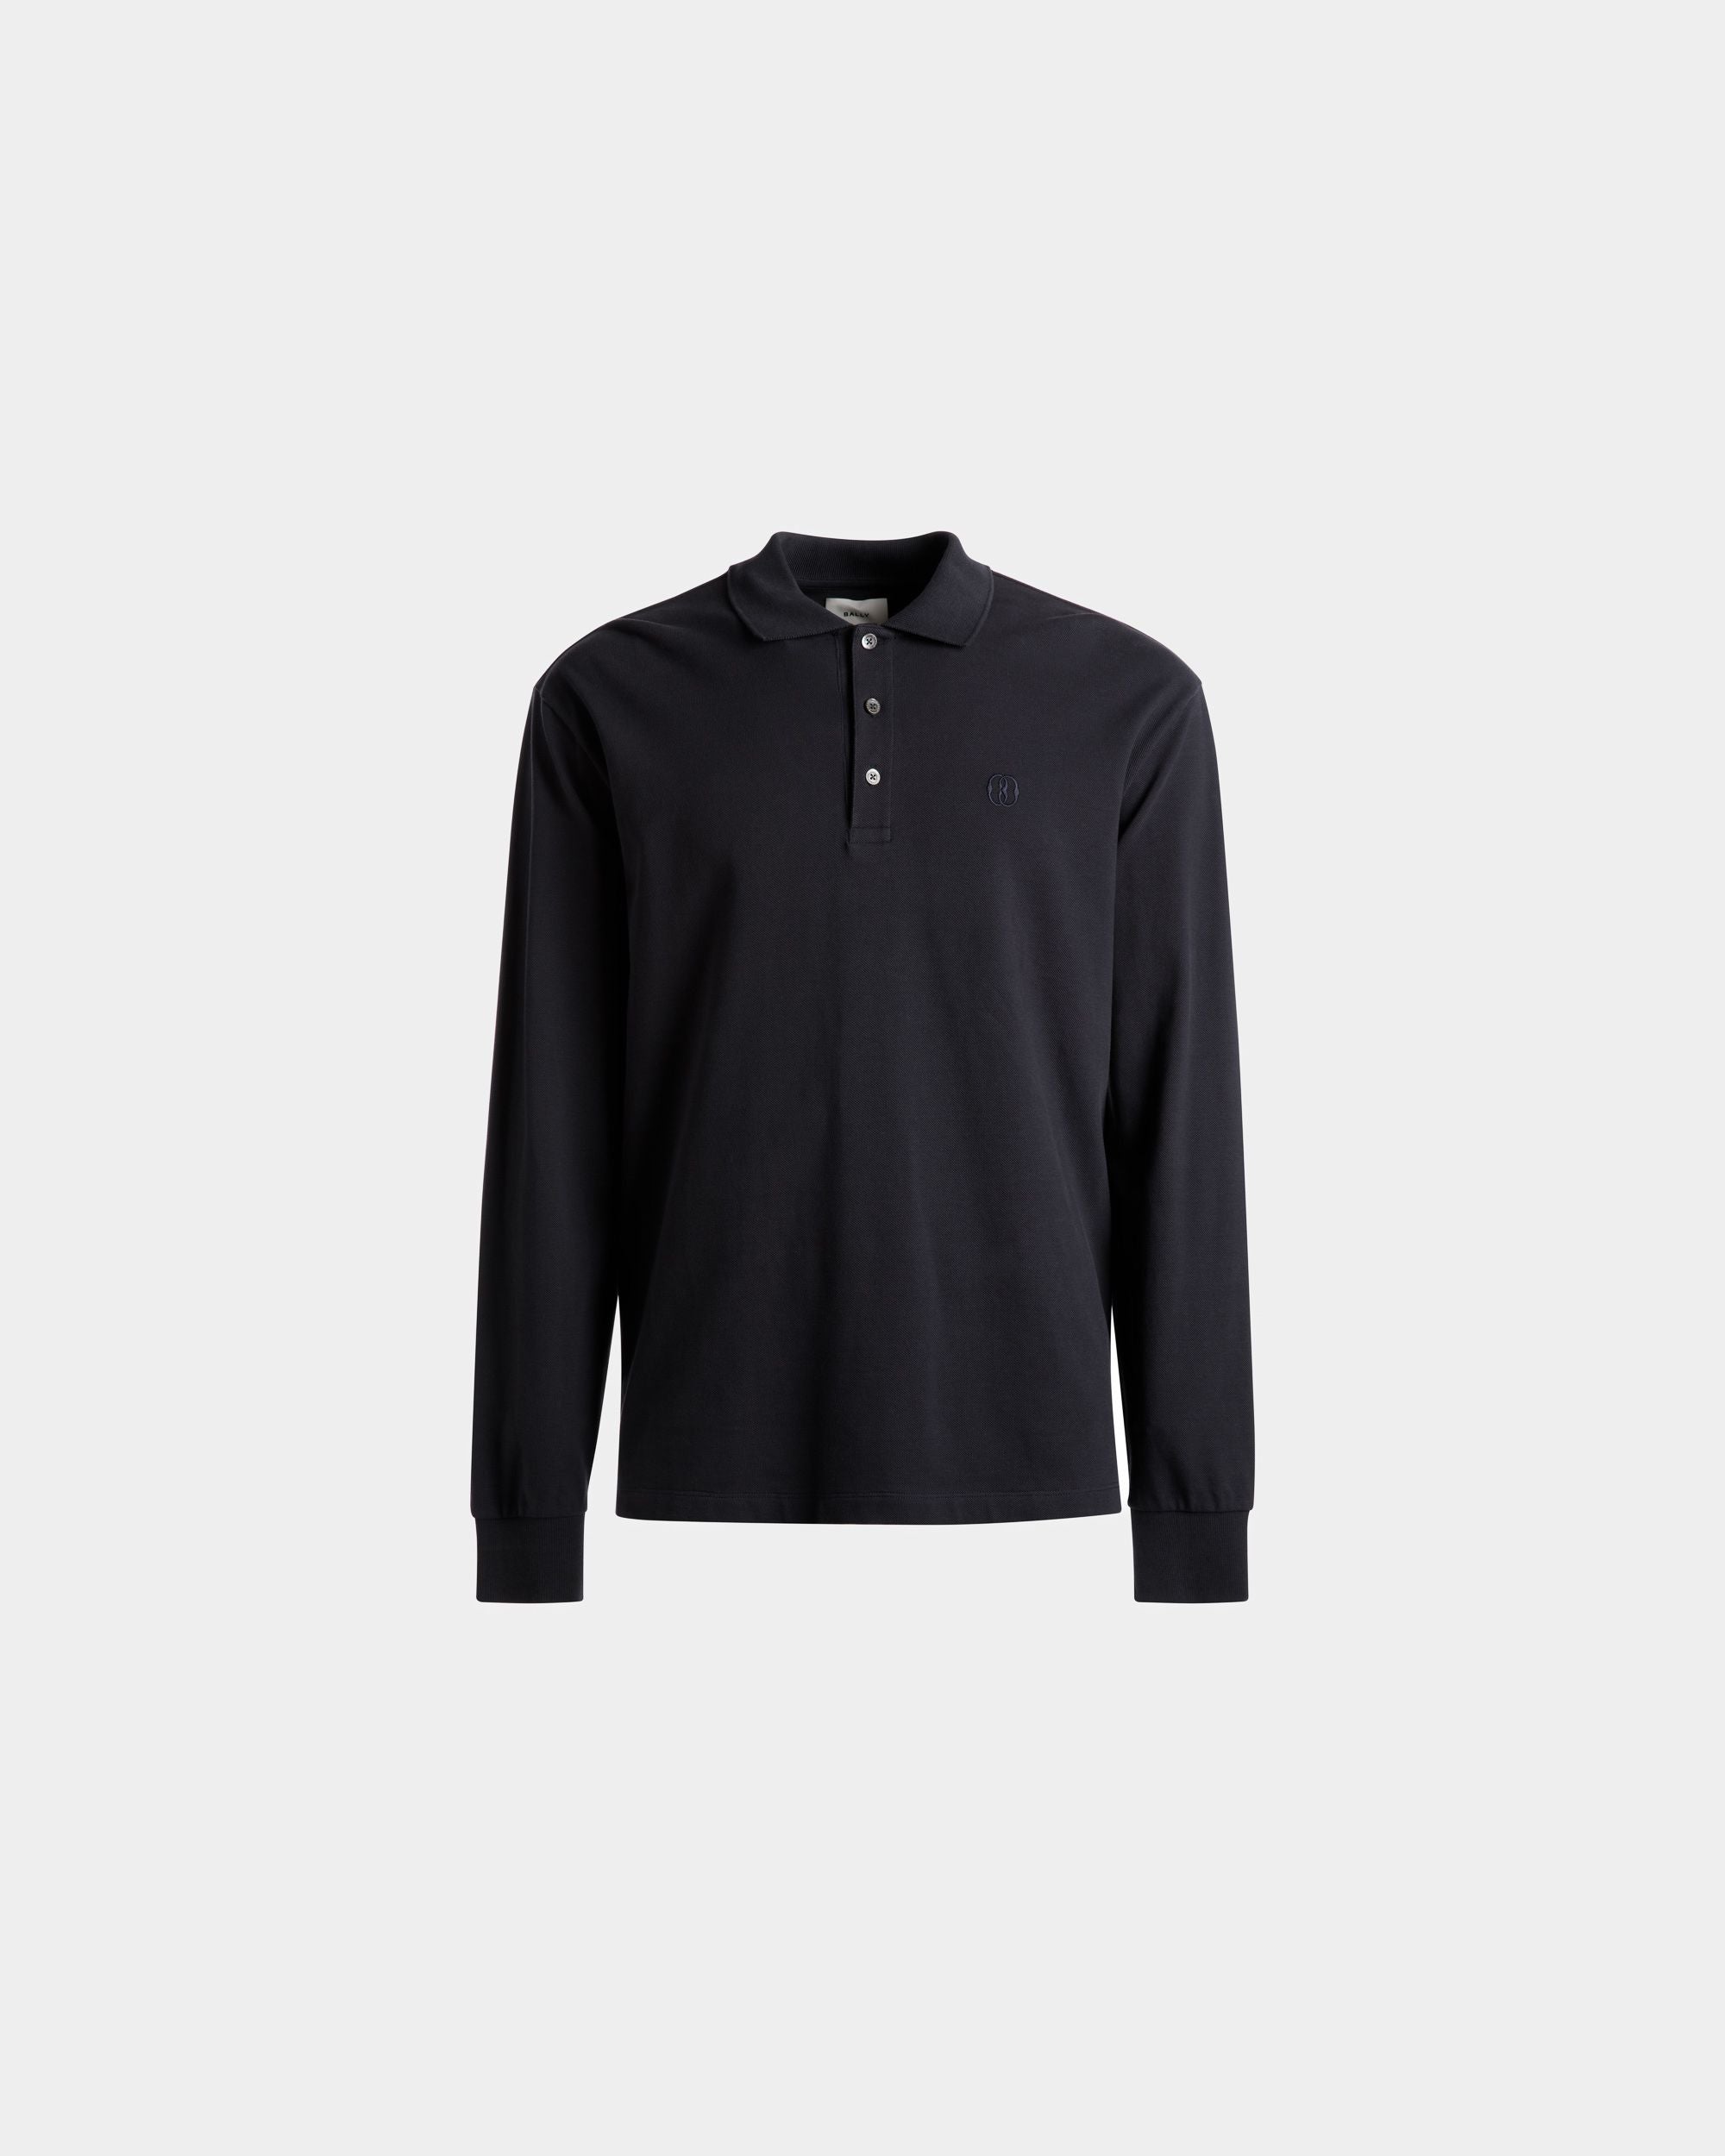 Long Sleeve Polo | Men's Polo Shirt | Midnight Cotton | Bally | Still Life Front